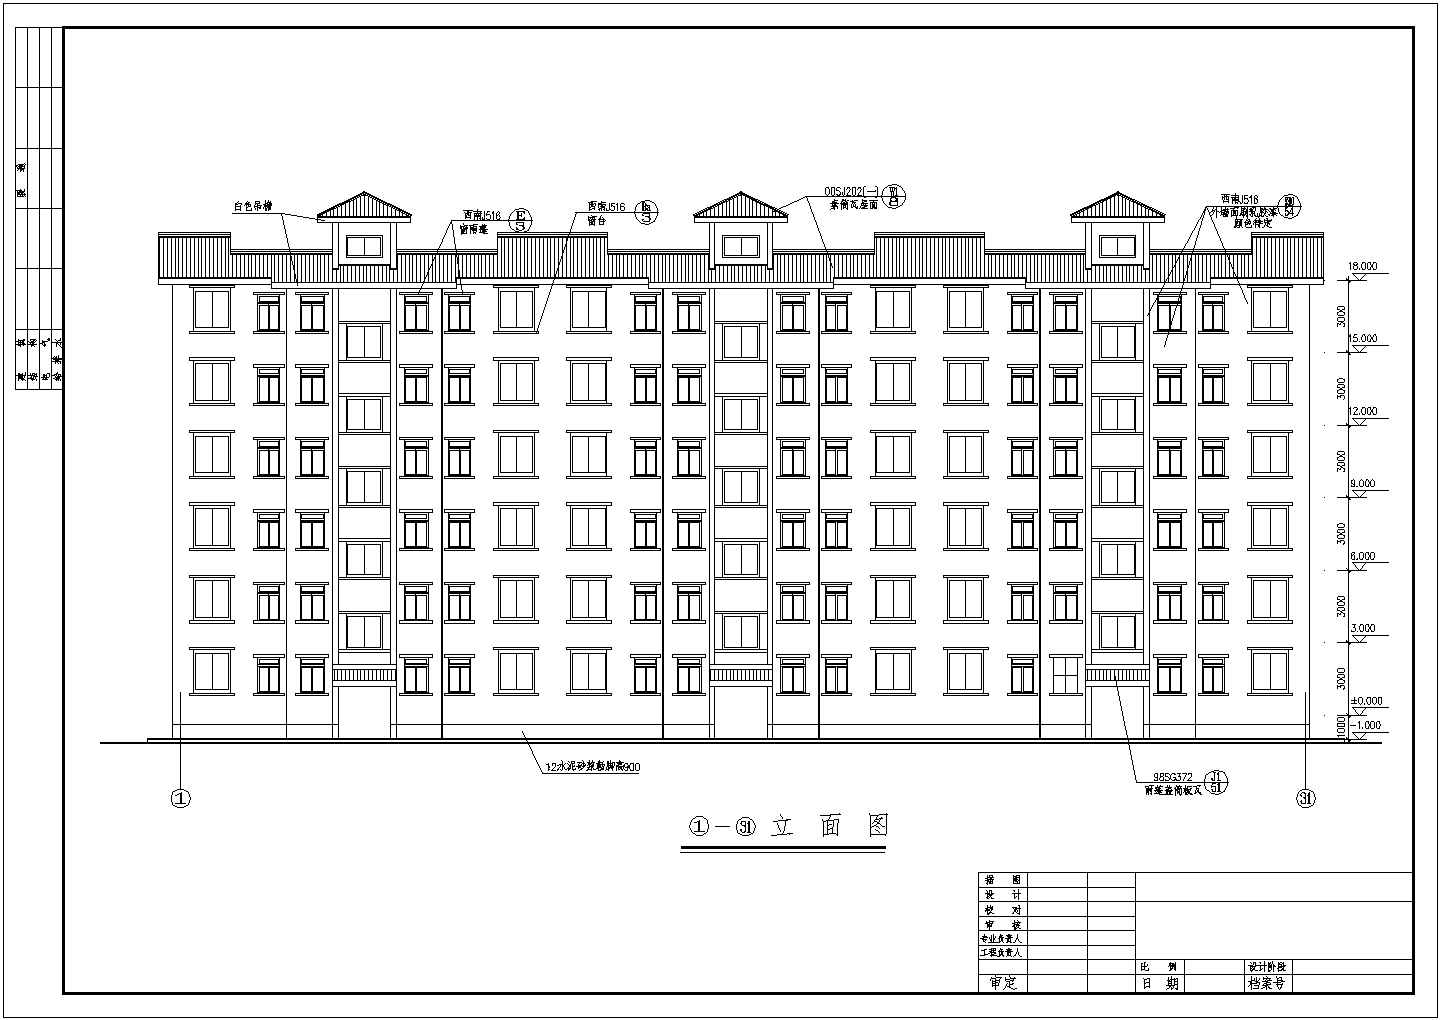 2416平米六层经济适用房三单元每单元住宅施工图